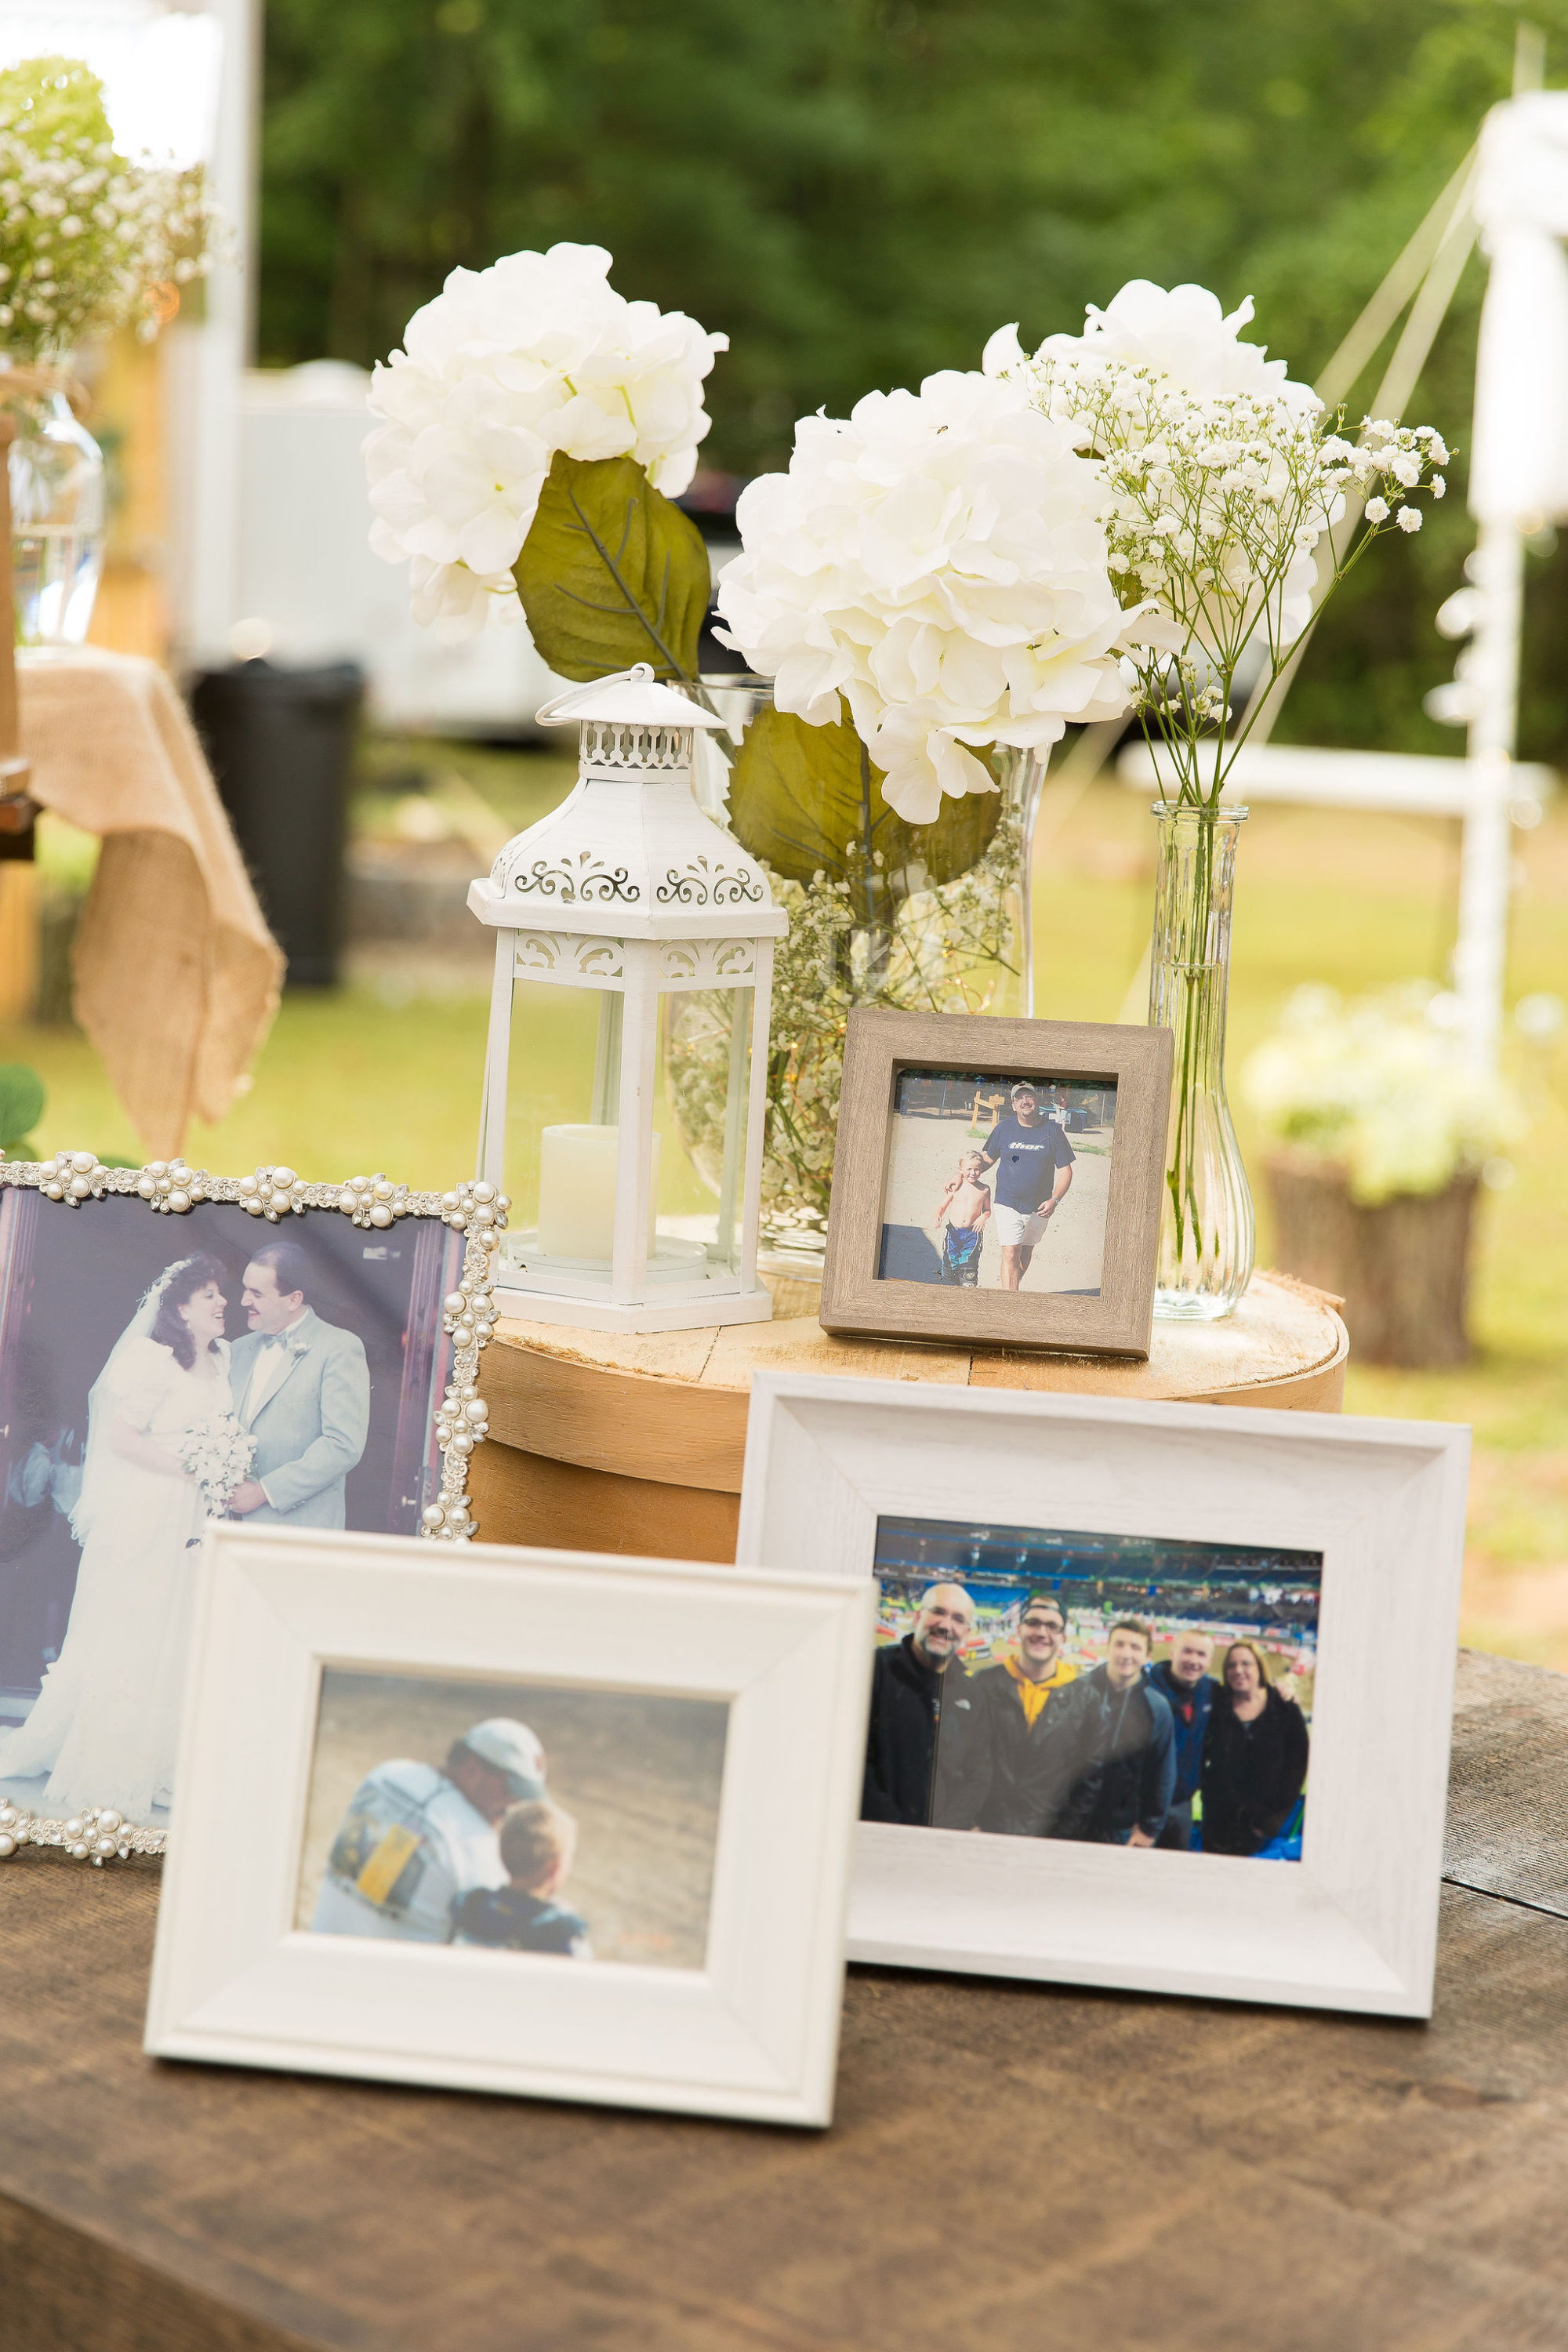 tented backyard wedding photos memorial table